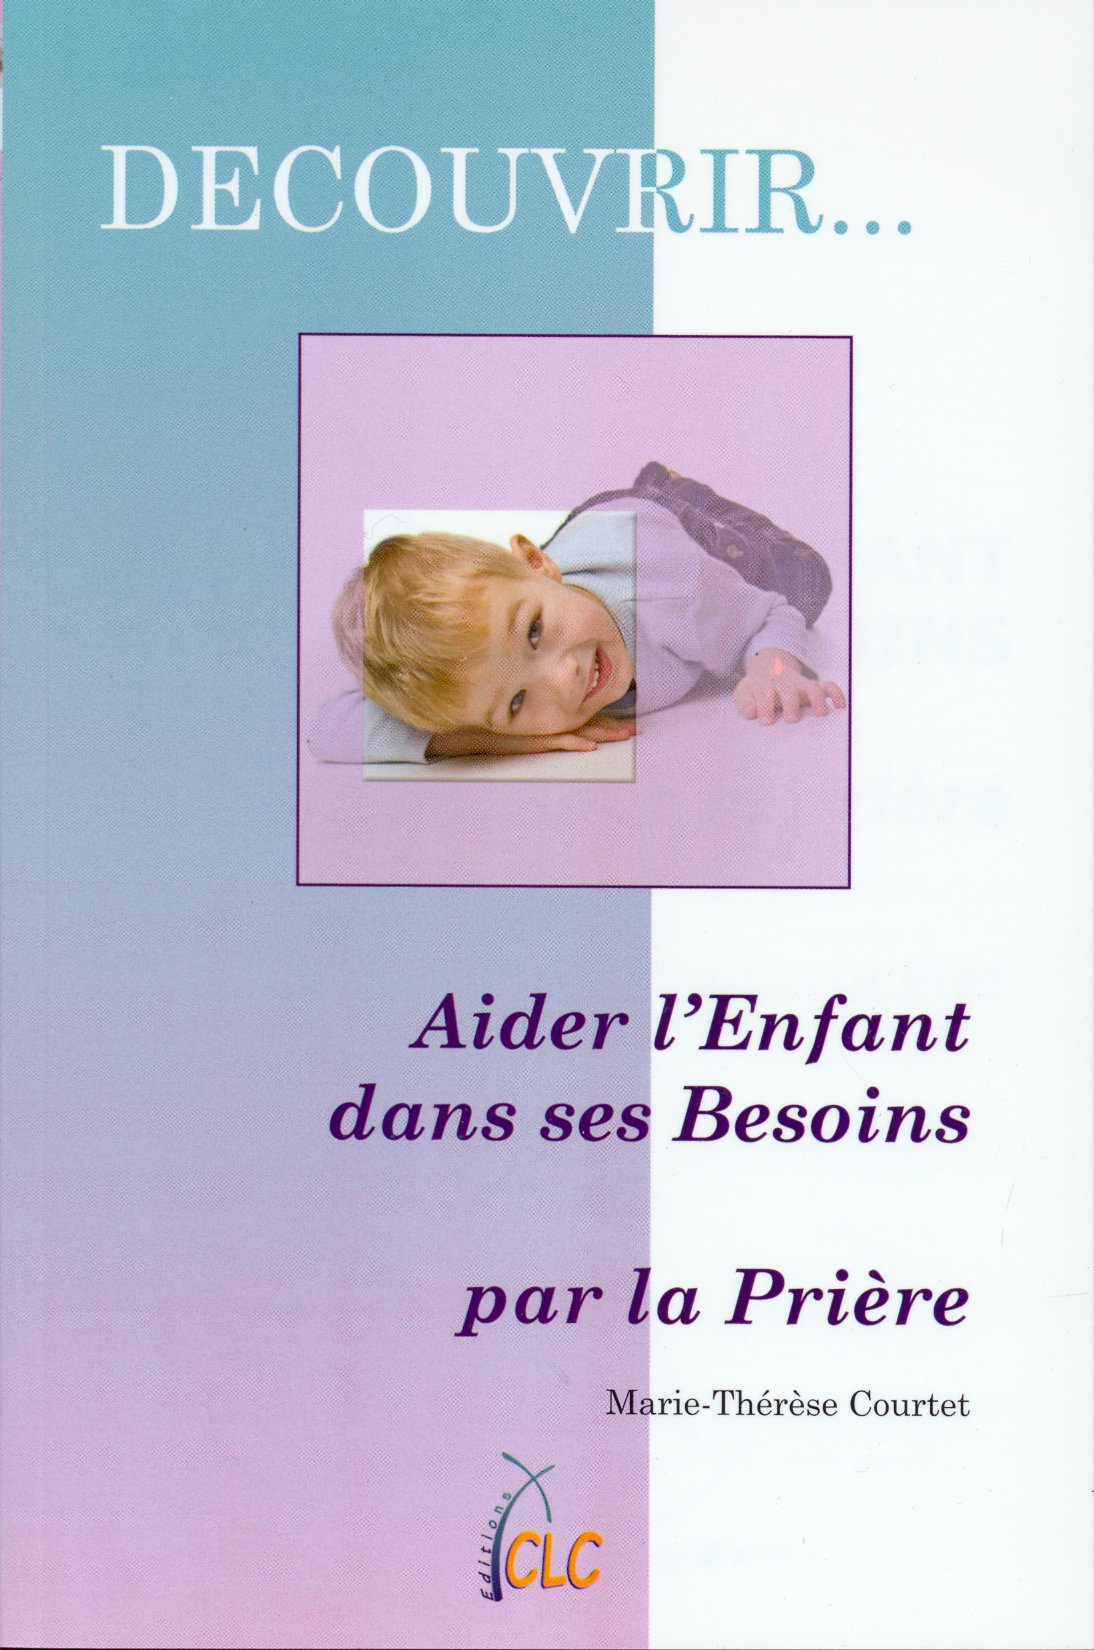 AIDER L'ENFANT DANS SES BESOINS - COLLECTION DECOUVRIR 2